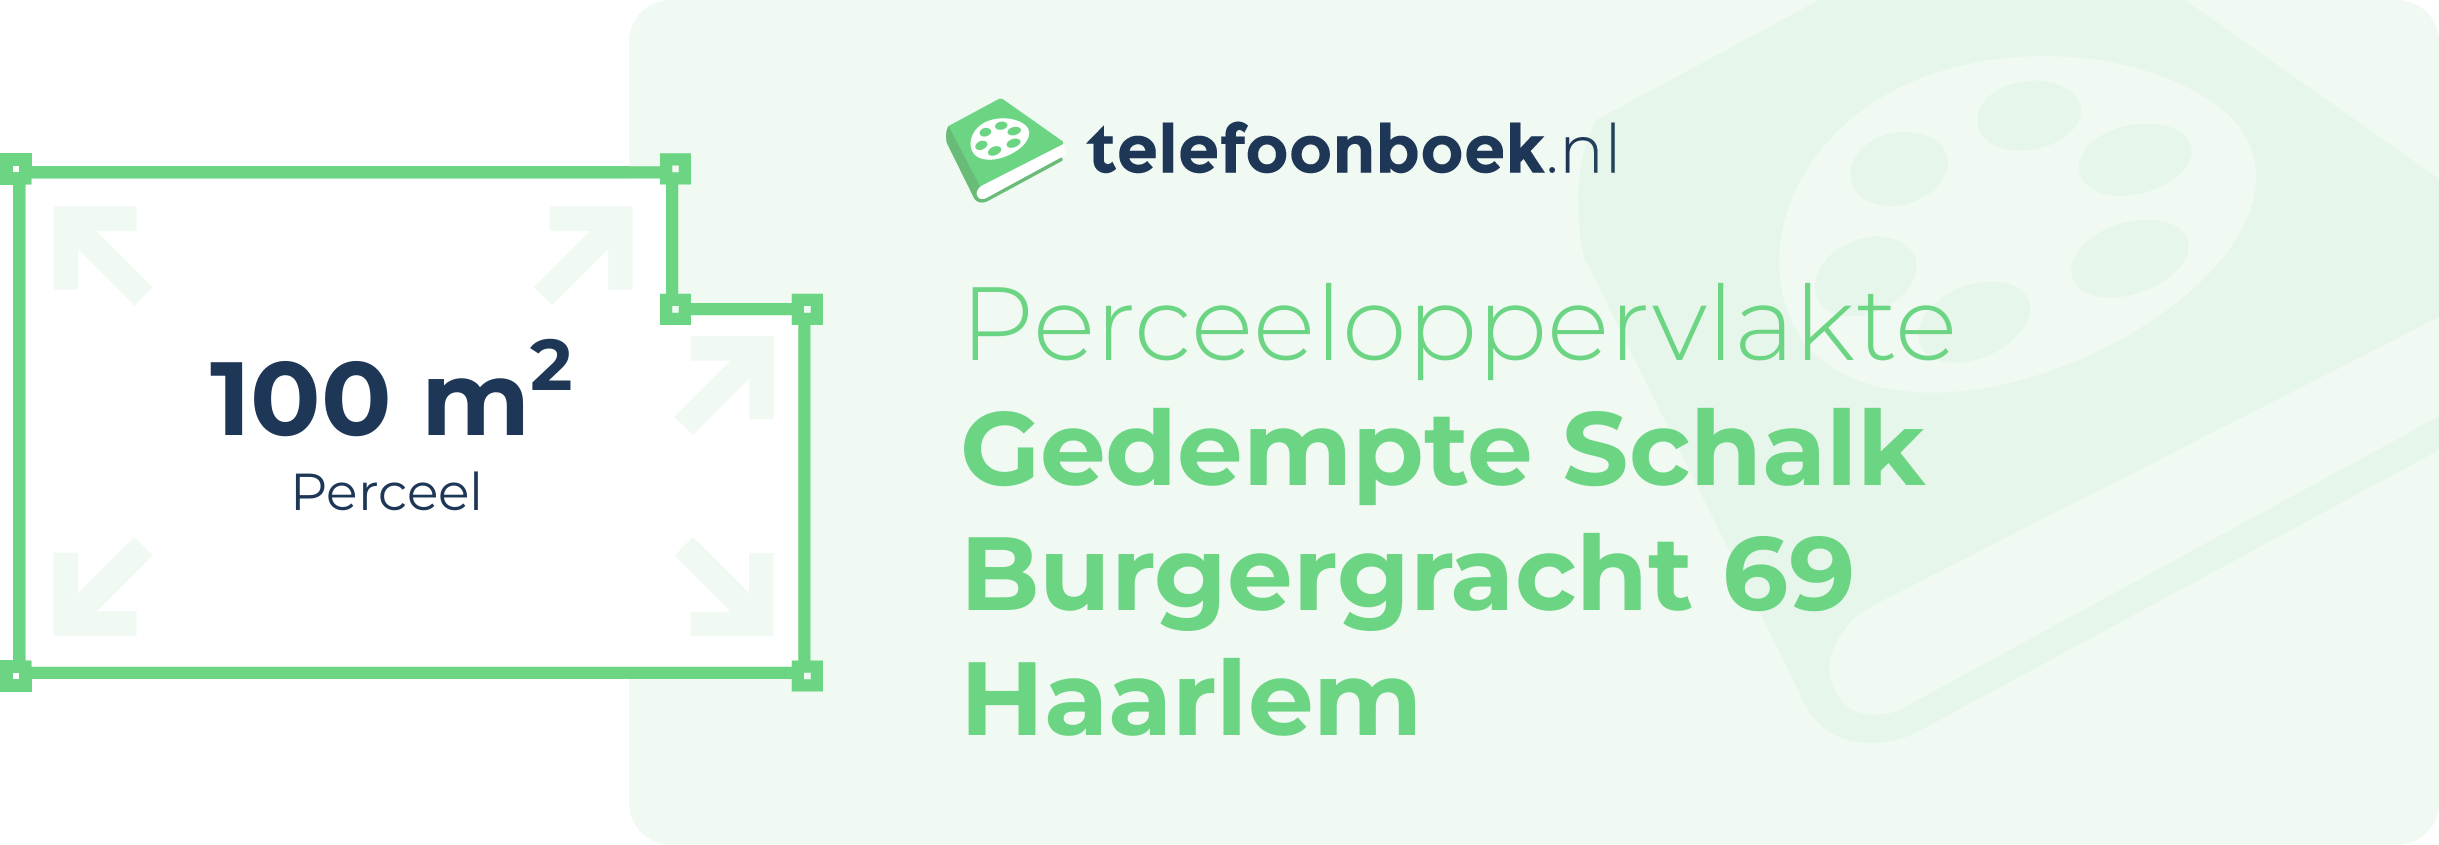 Perceeloppervlakte Gedempte Schalk Burgergracht 69 Haarlem